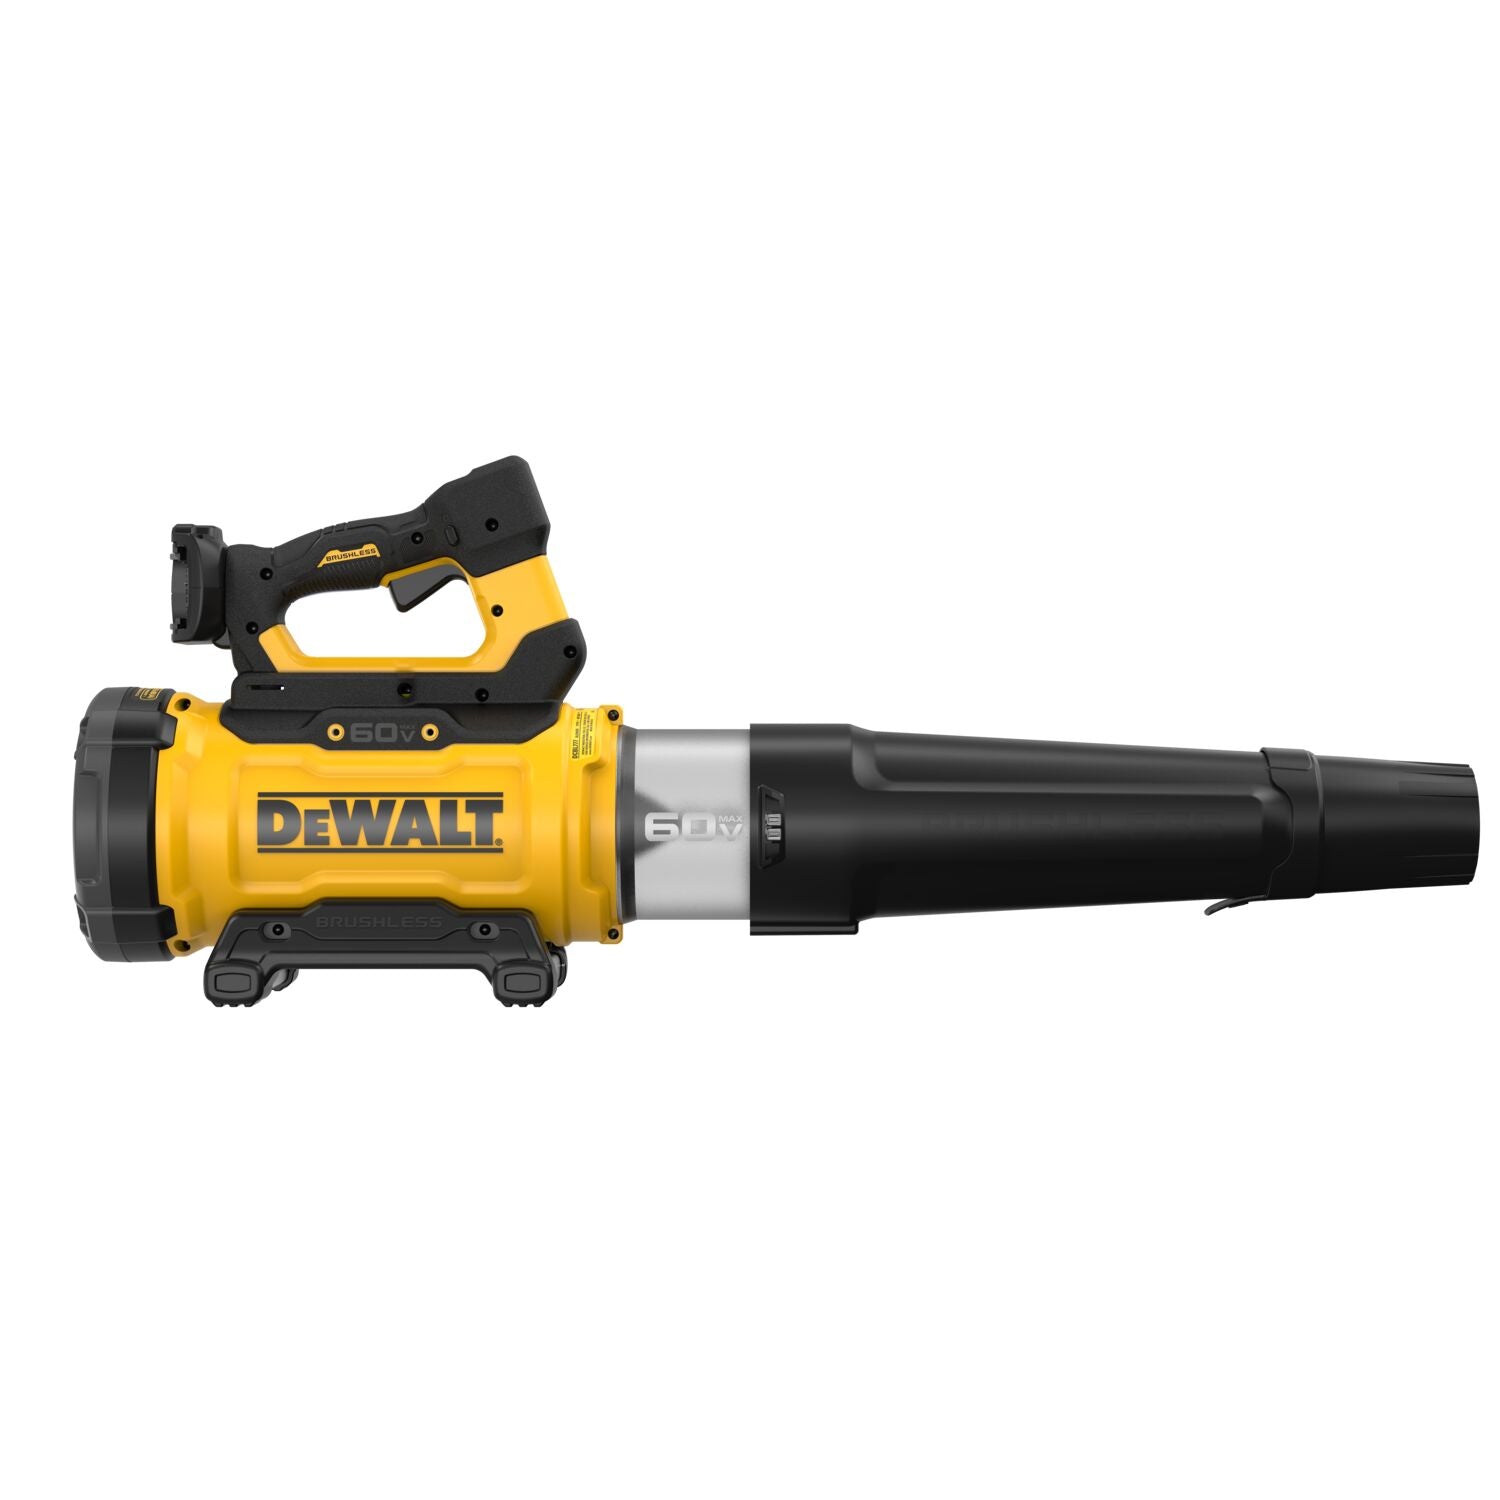 DEWALT DCBL777B 60V MAX* High Power Brushless Blower - Tool Only